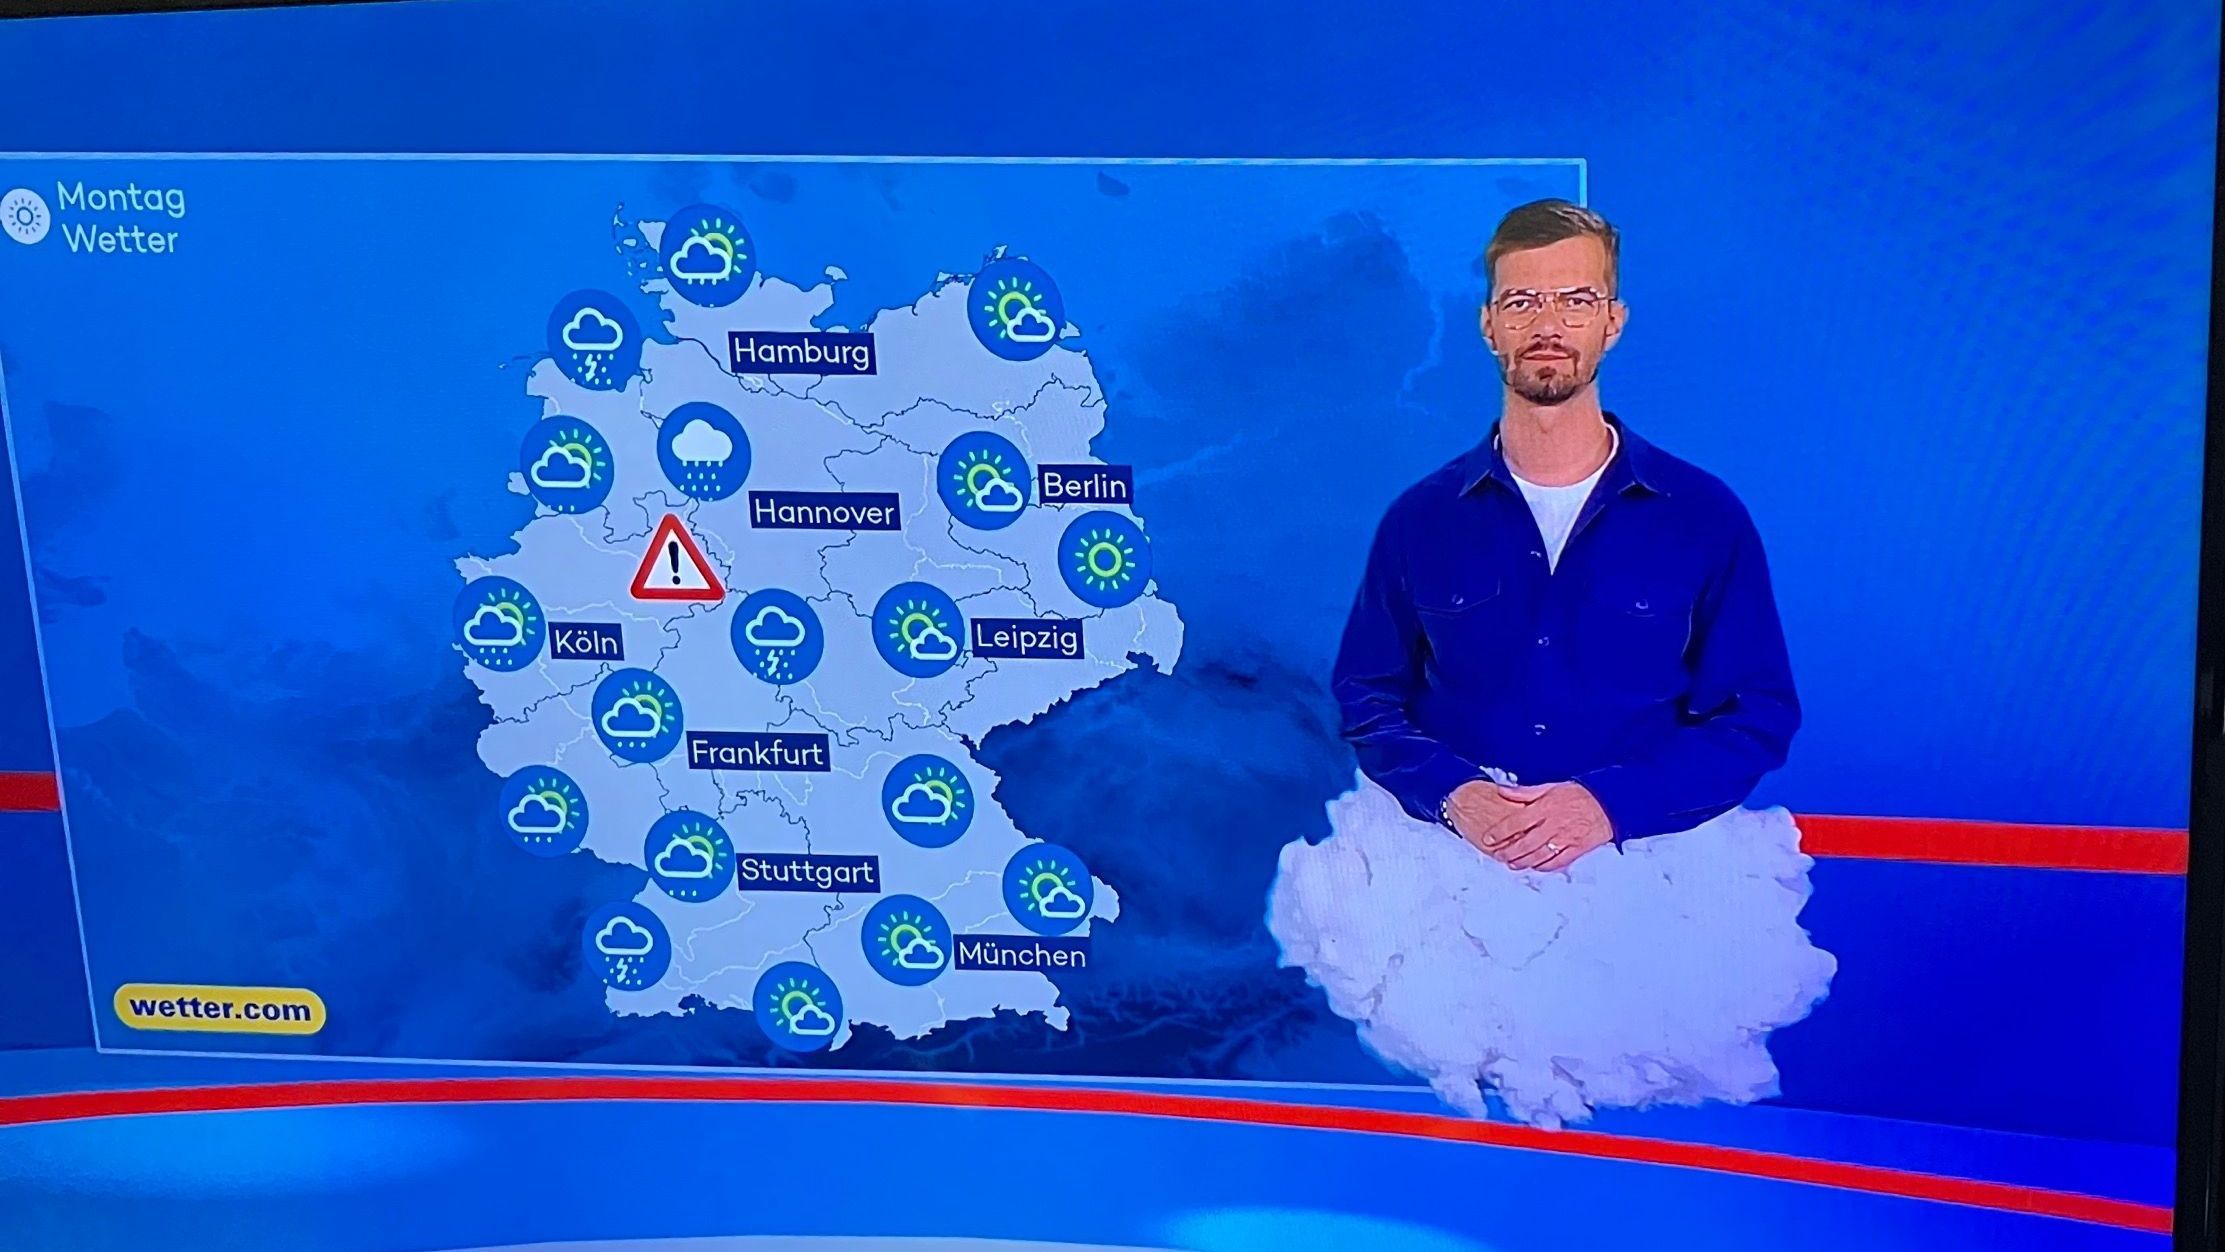 Joko Winterscheidt schwebt als Wolke zum Wetter der "ProSieben Newstime".